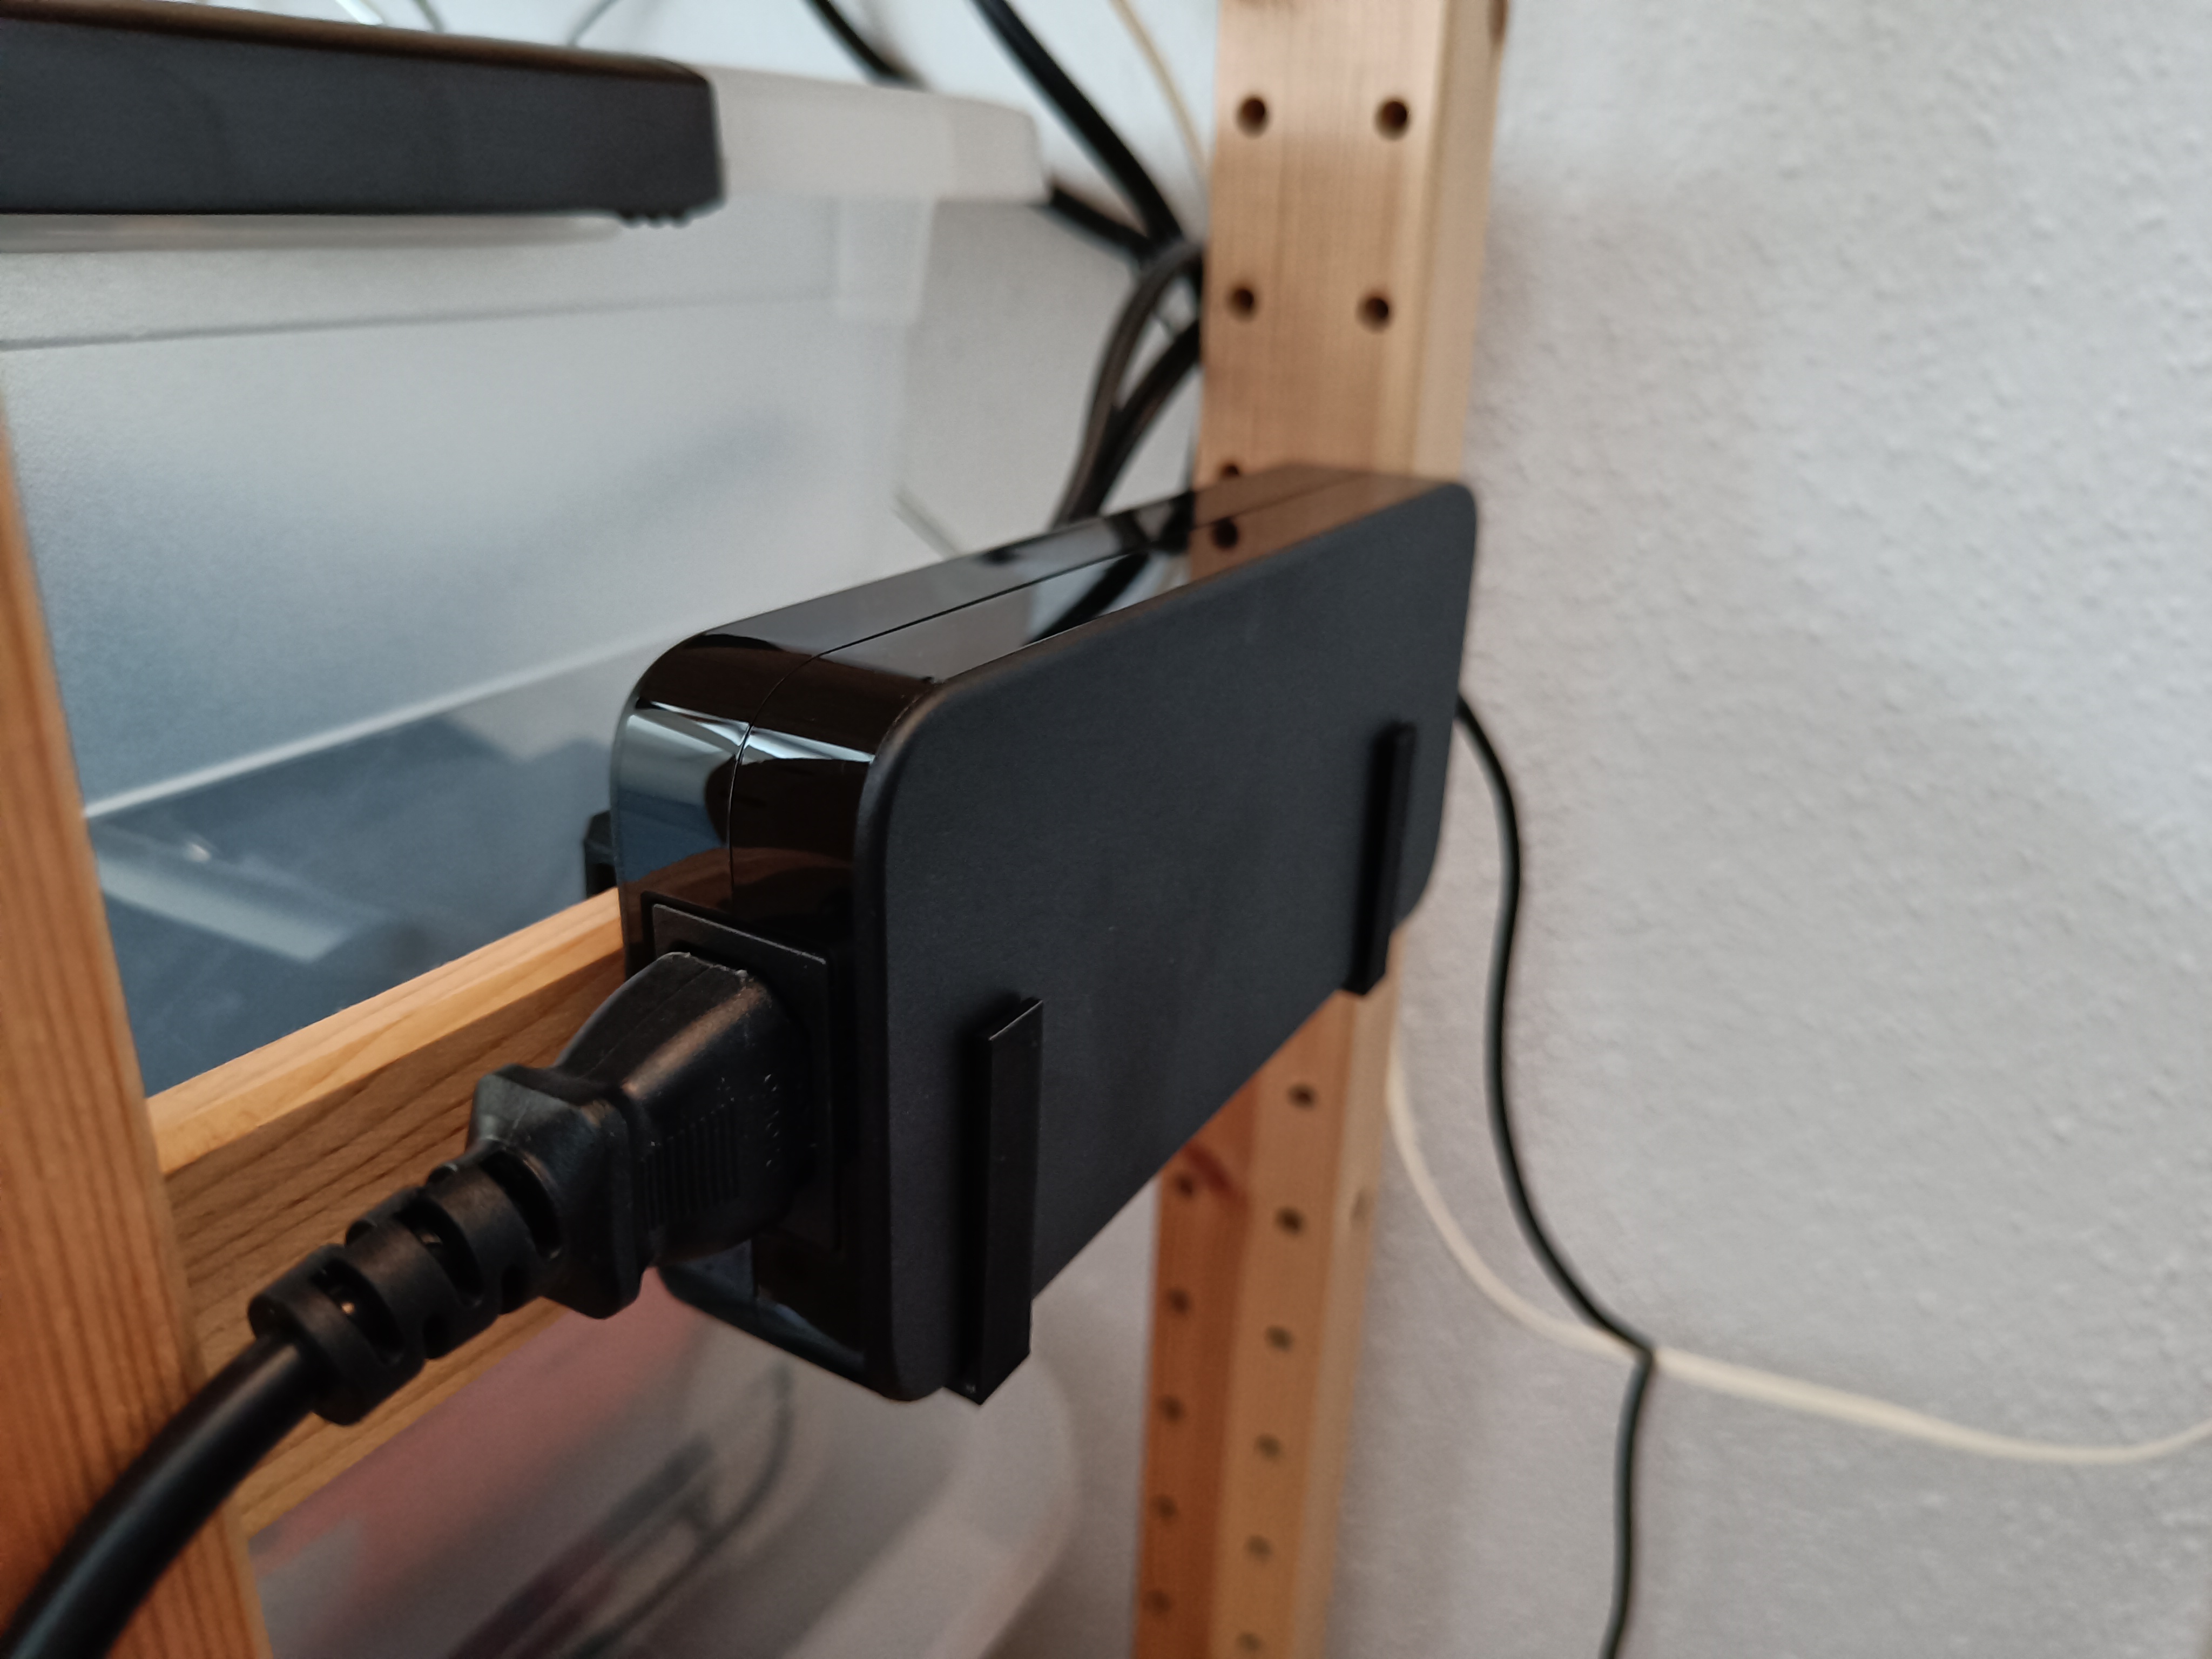 Prusa Mini power supply holder for Ivar shelf